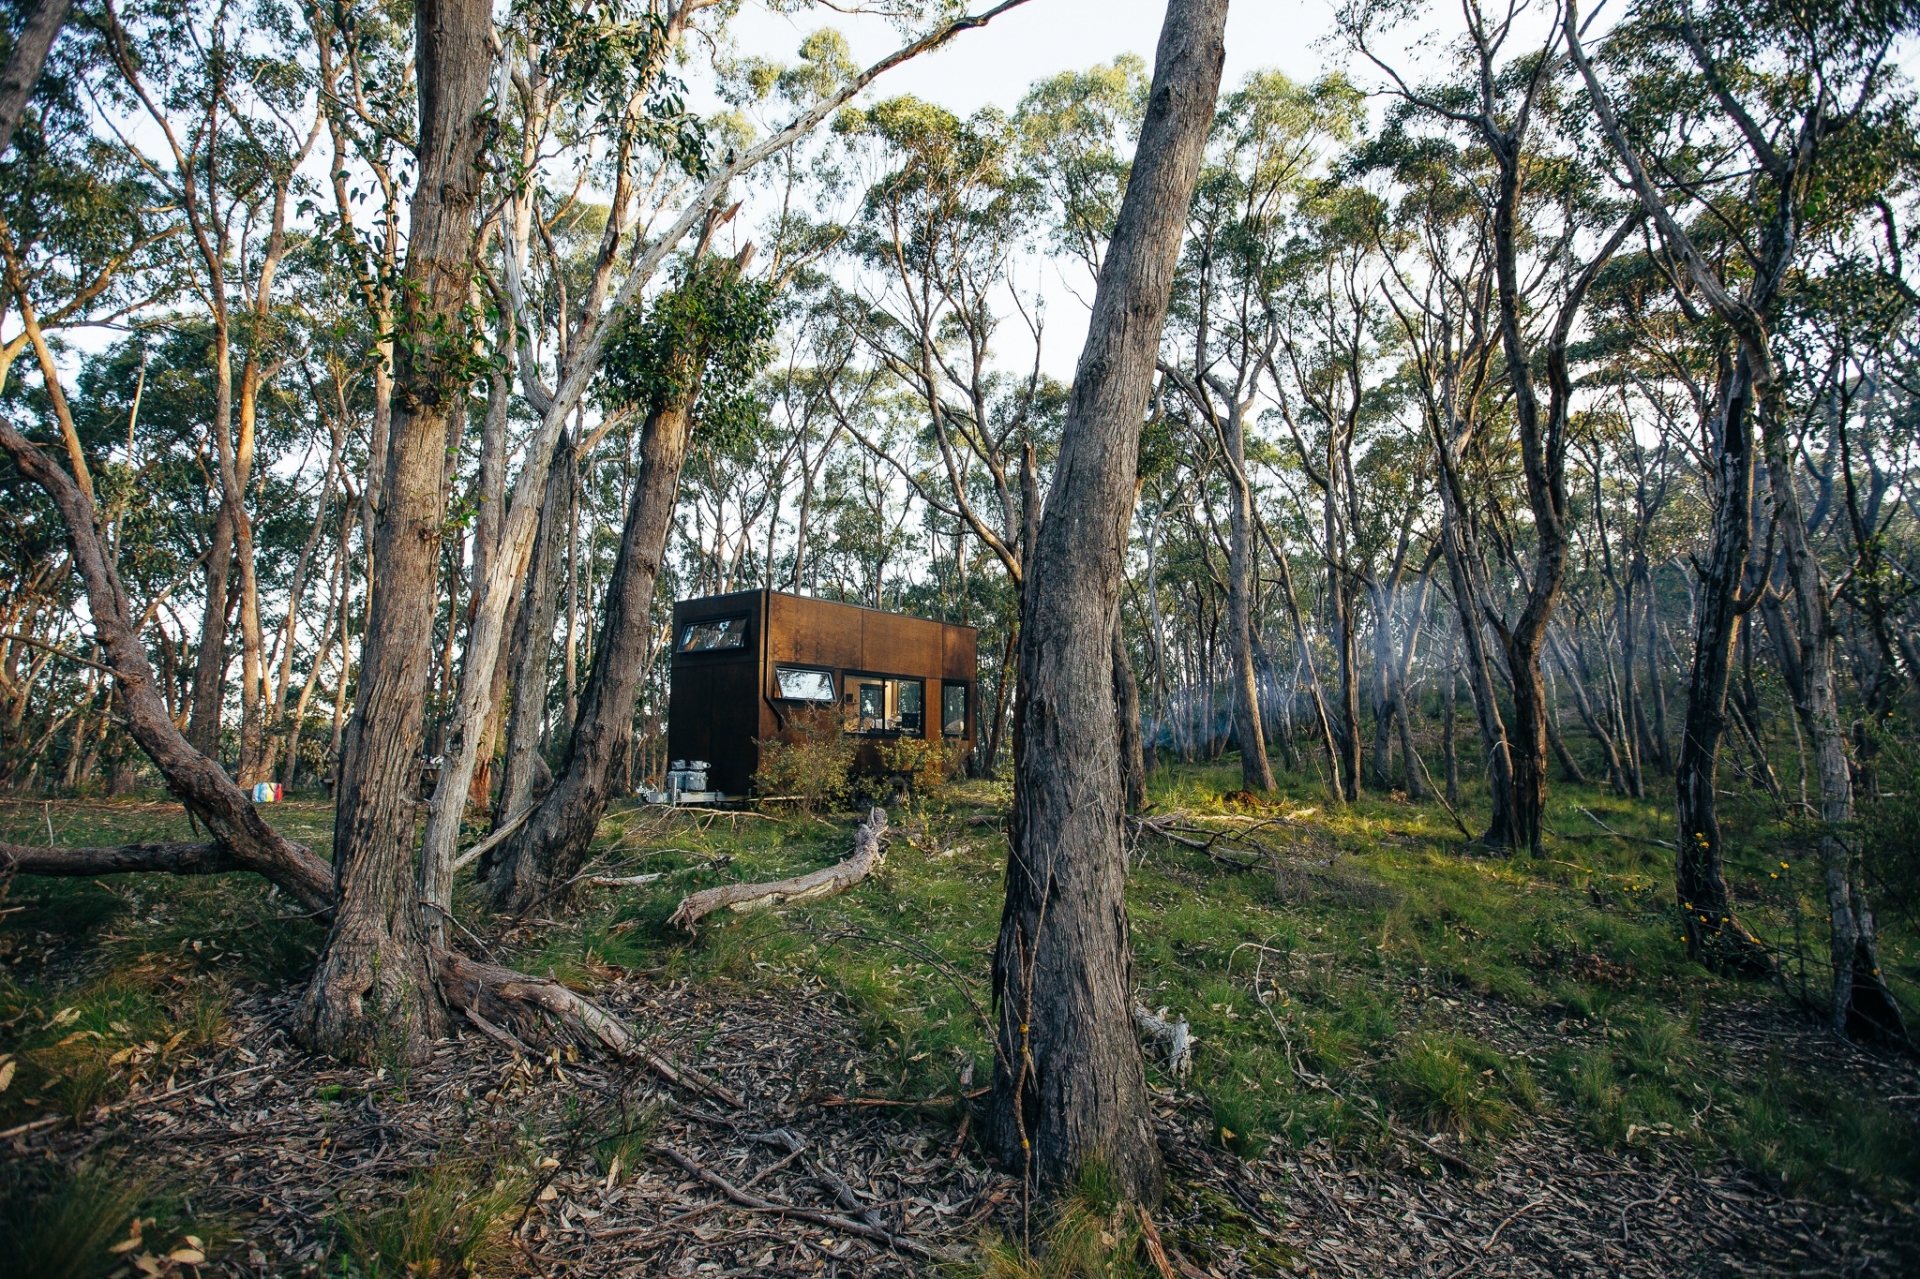 Khung cảnh ngọn đồi Adelaide tuyệt đẹp như đang “ôm ấp” ngôi nhà nhỏ.